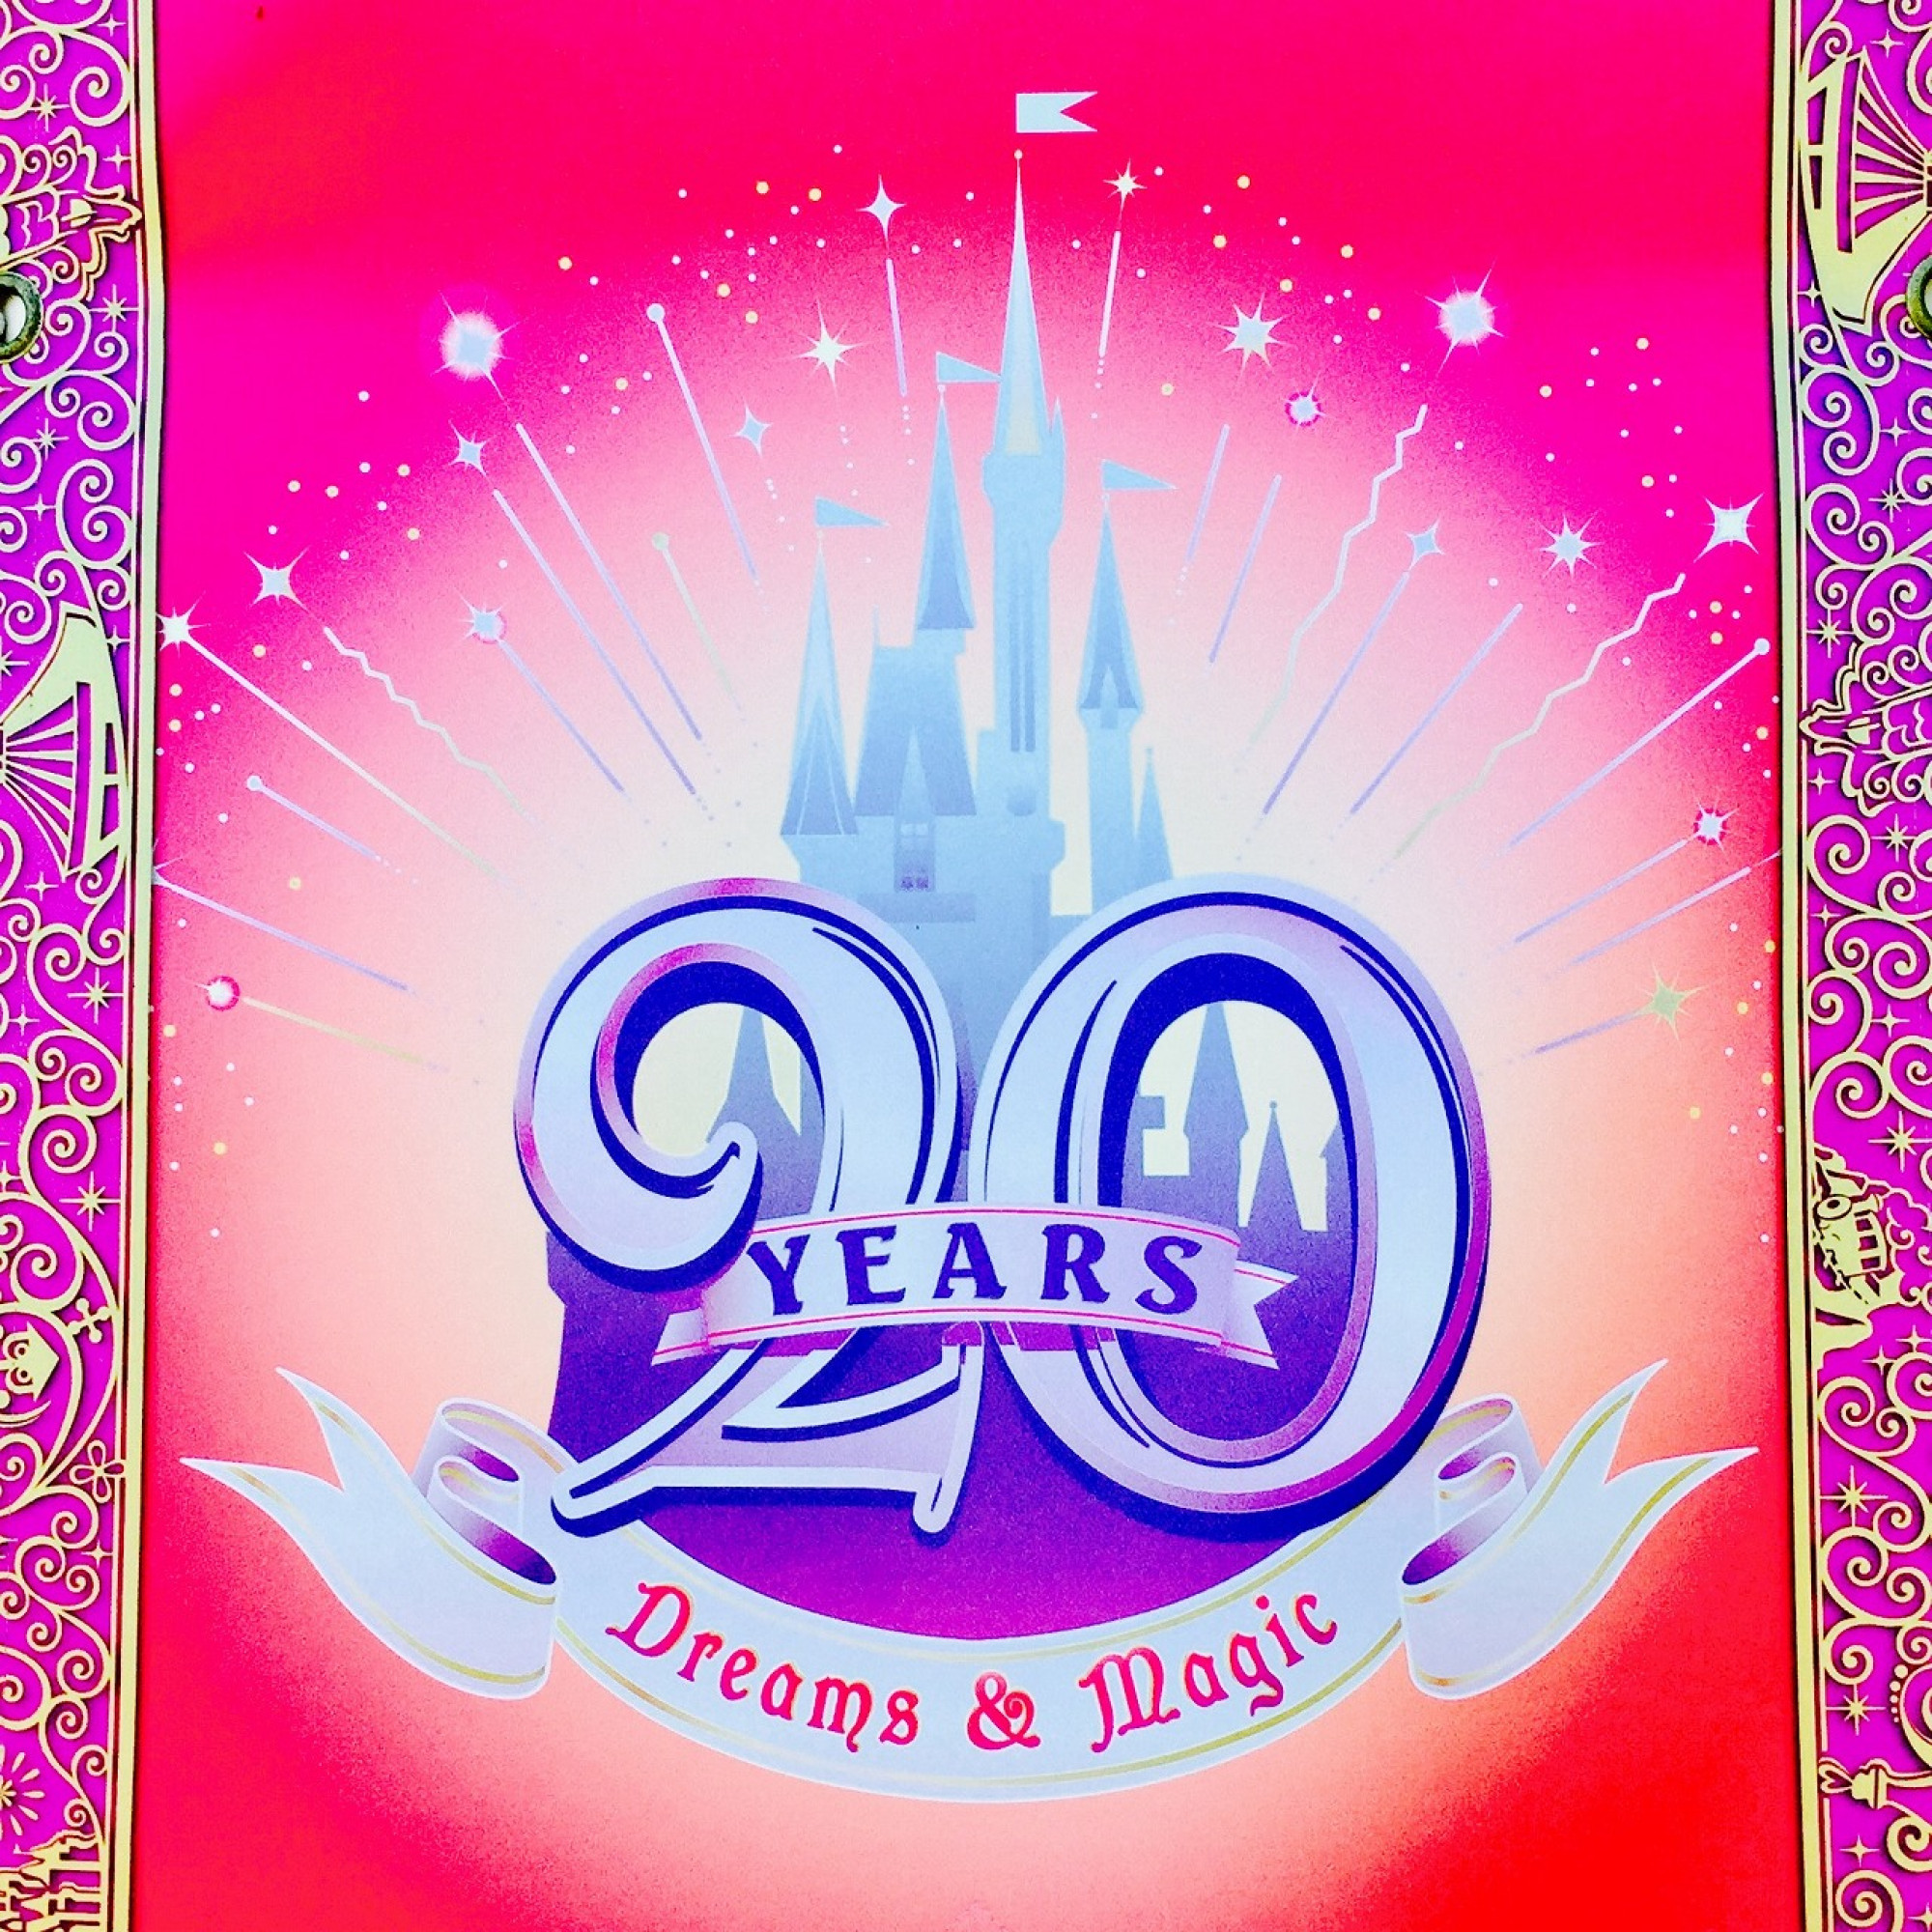 ディズニーランドの周年ロゴ キャステル Castel ディズニー情報